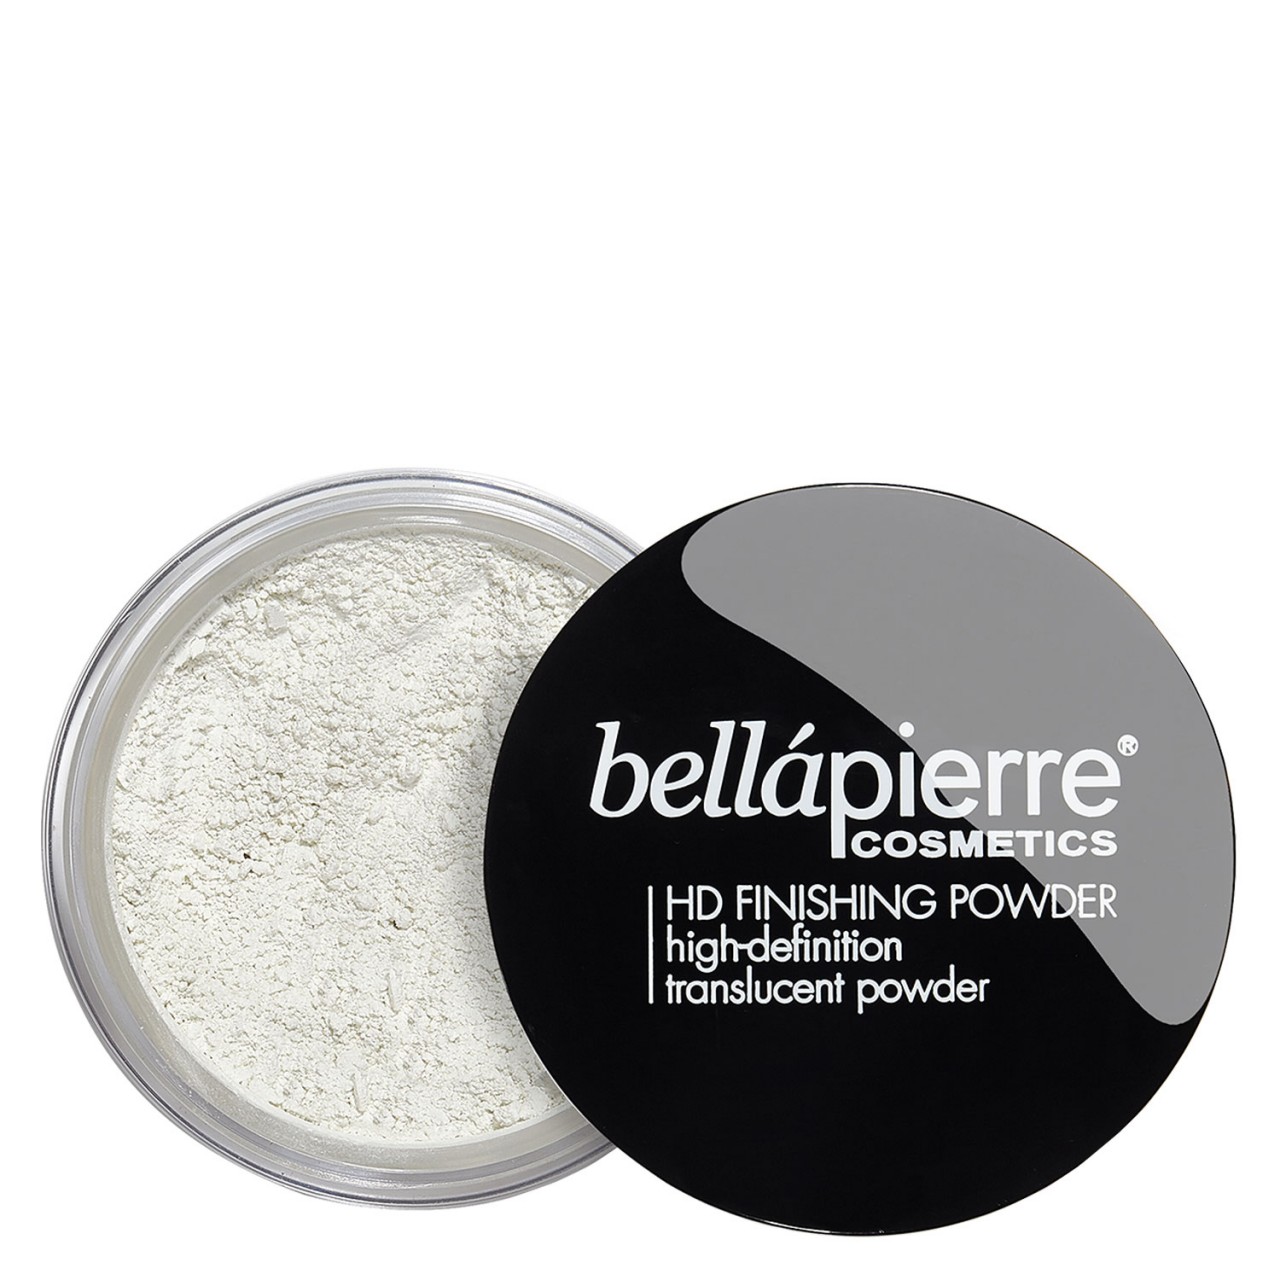 bellapierre Teint - HD Finishing Powder Translucent von bellapierre